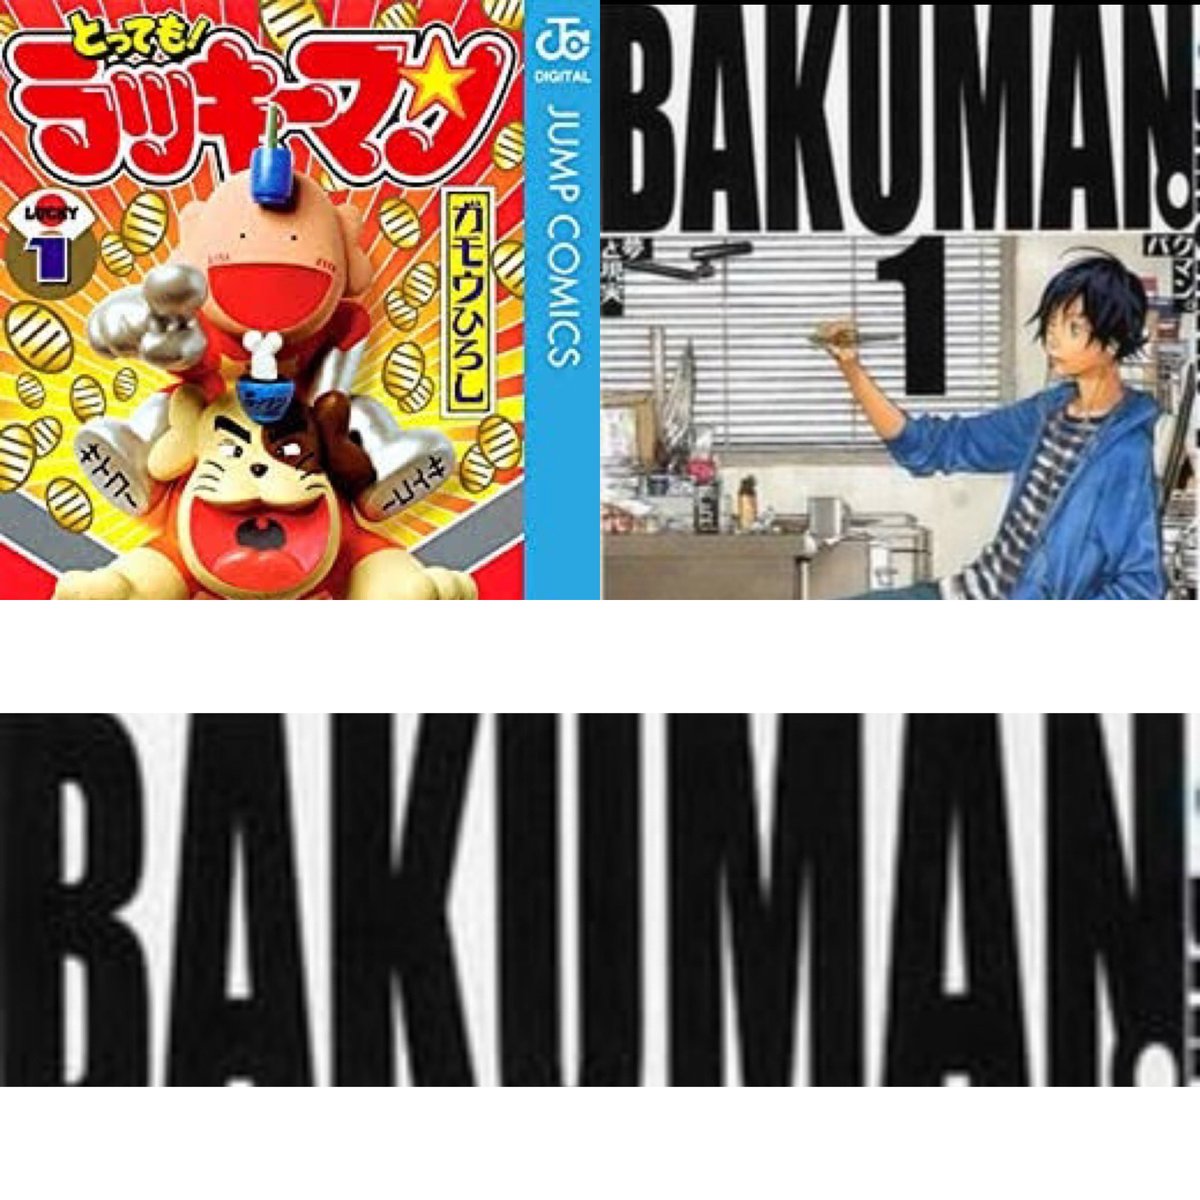 タクティ 知ってた オレが高校生の時にジャンプでやってて打ち切りになった ラッキーマン と映画にもなっためっちゃ人気漫画 Bakuman が作者同じ説あんぞ Bakumanの下を消すと Rakiiman になるし ん T Co 64zlhnblkl